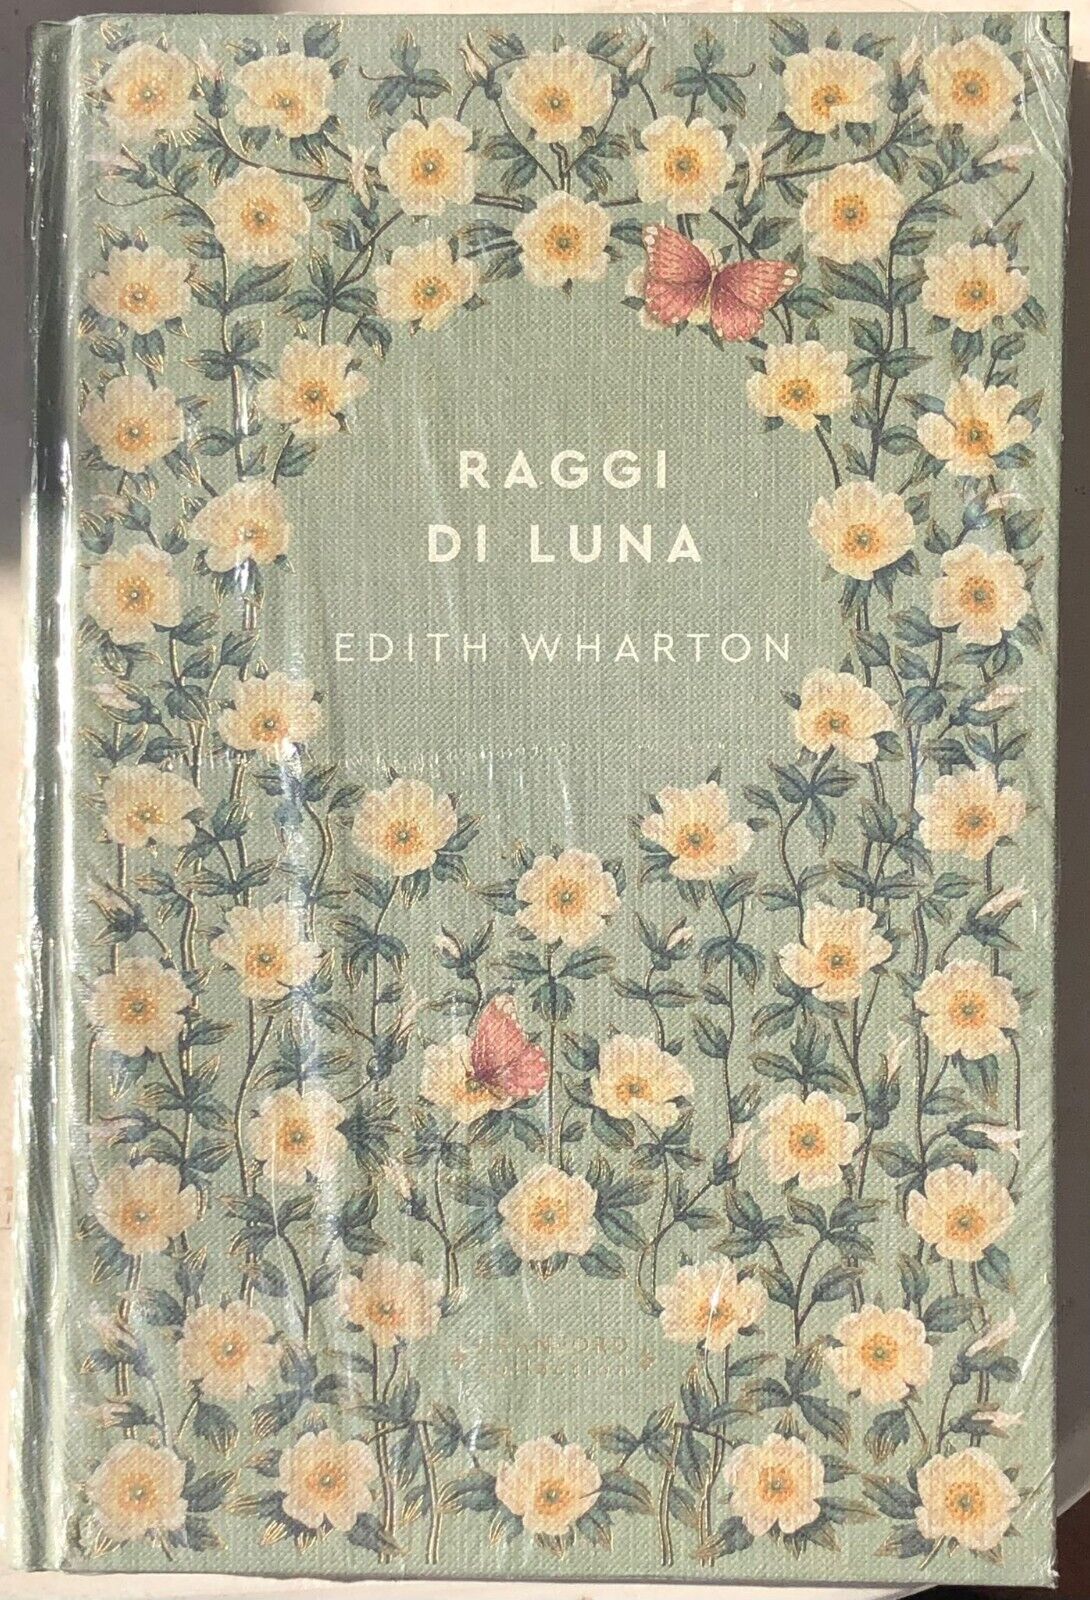 Storie senza tempo n. 51 - Raggi di luna CRANFORD COLLECTION di Edith Wharton, 